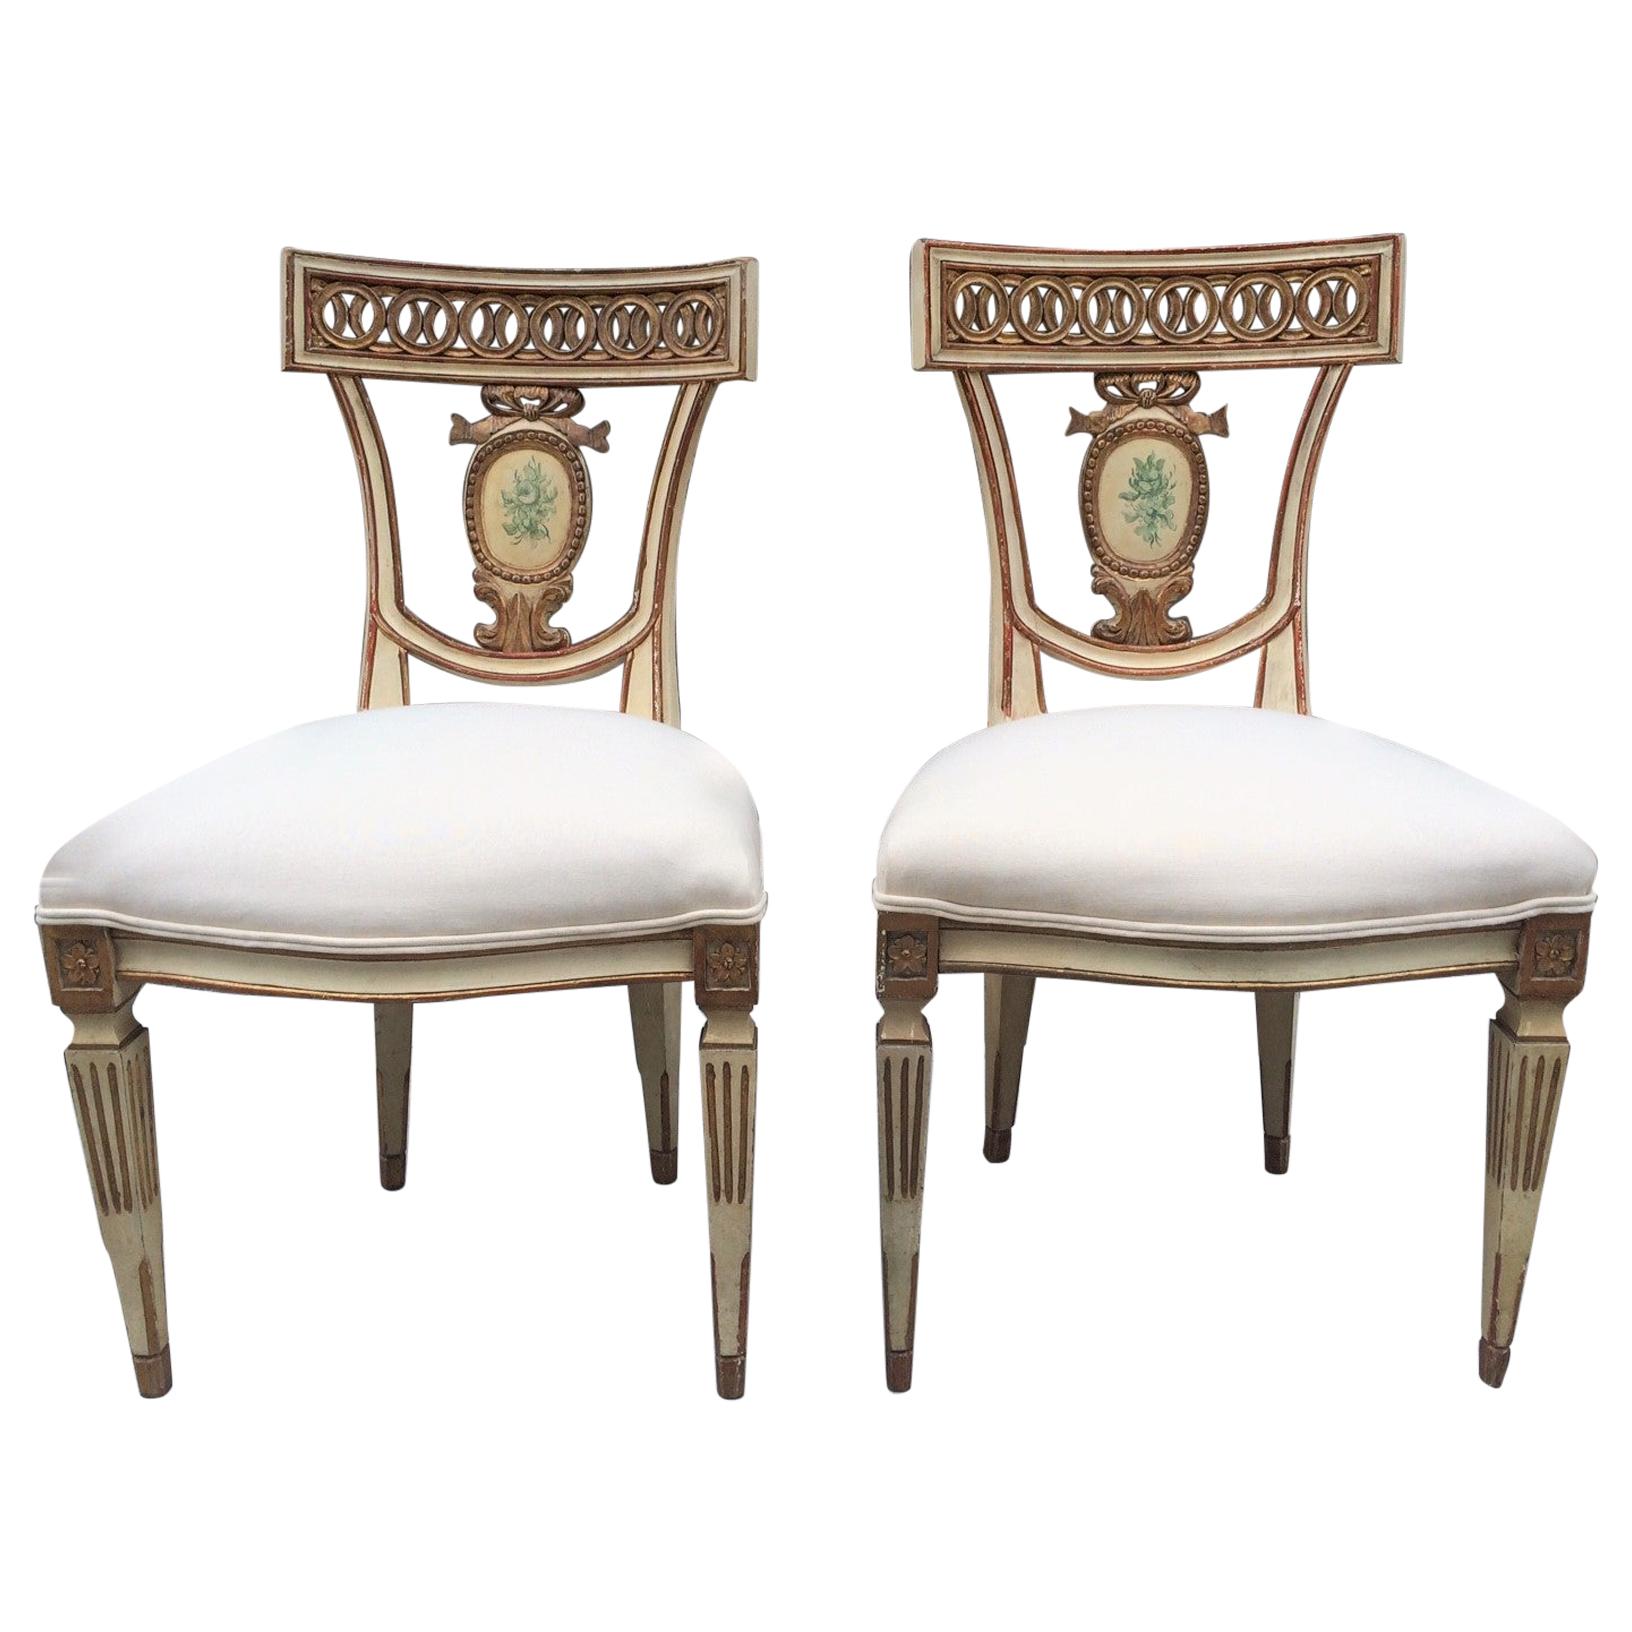 Paire de chaises d'appoint néoclassiques italiennes du XIXe siècle du XIXe siècle